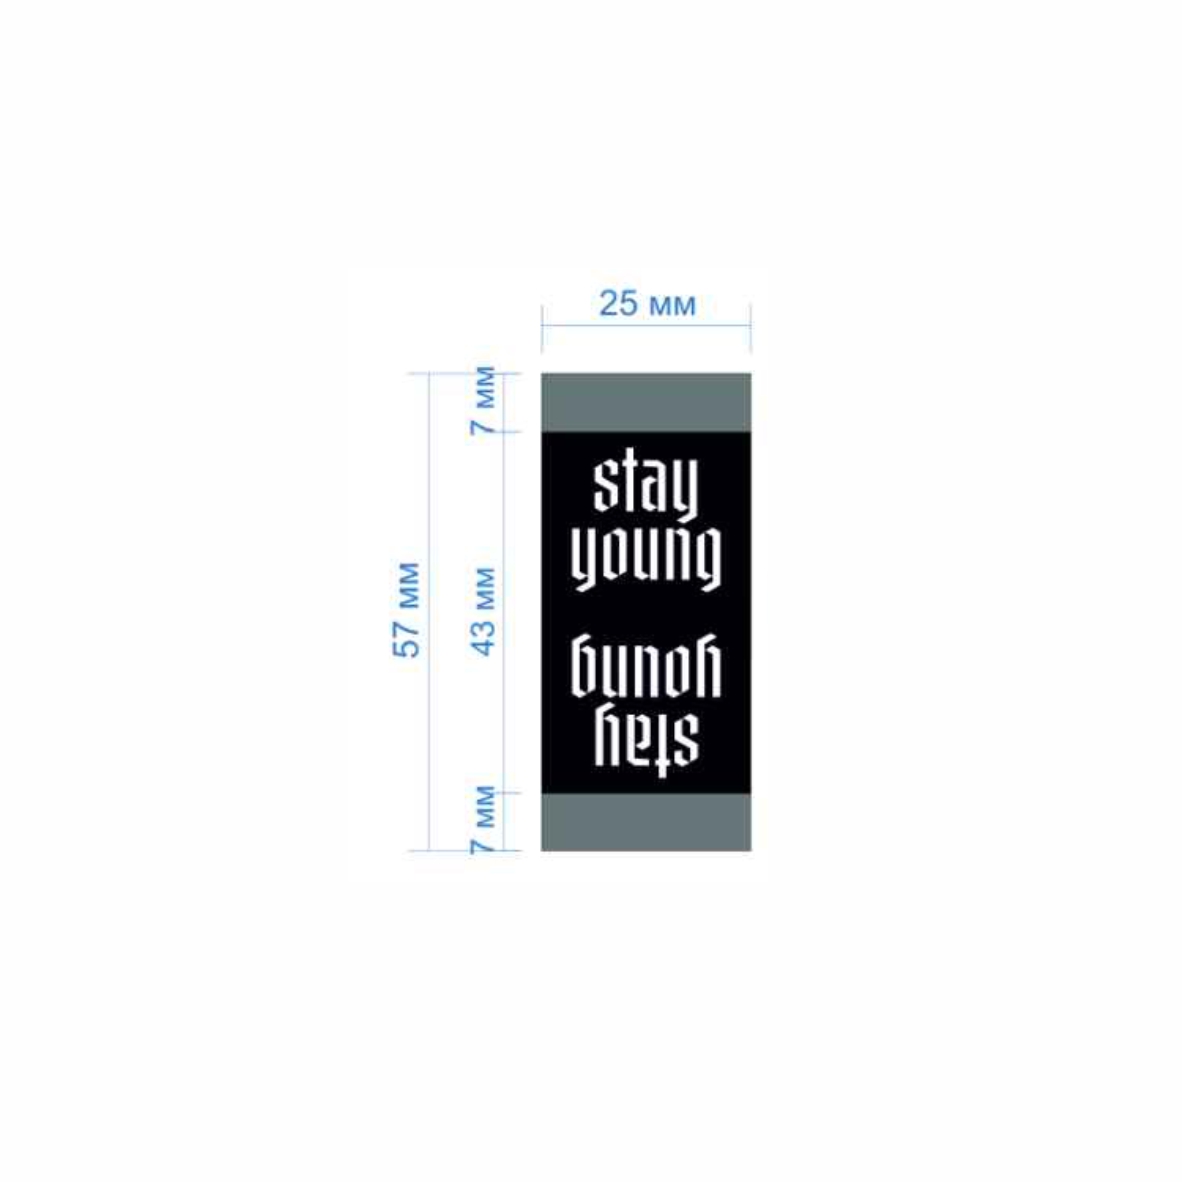 Этикетка тканевая Stay young 2,5см черная и белый лого /флажок, 70 atki/, шт. Вышивка / этикетка тканевая